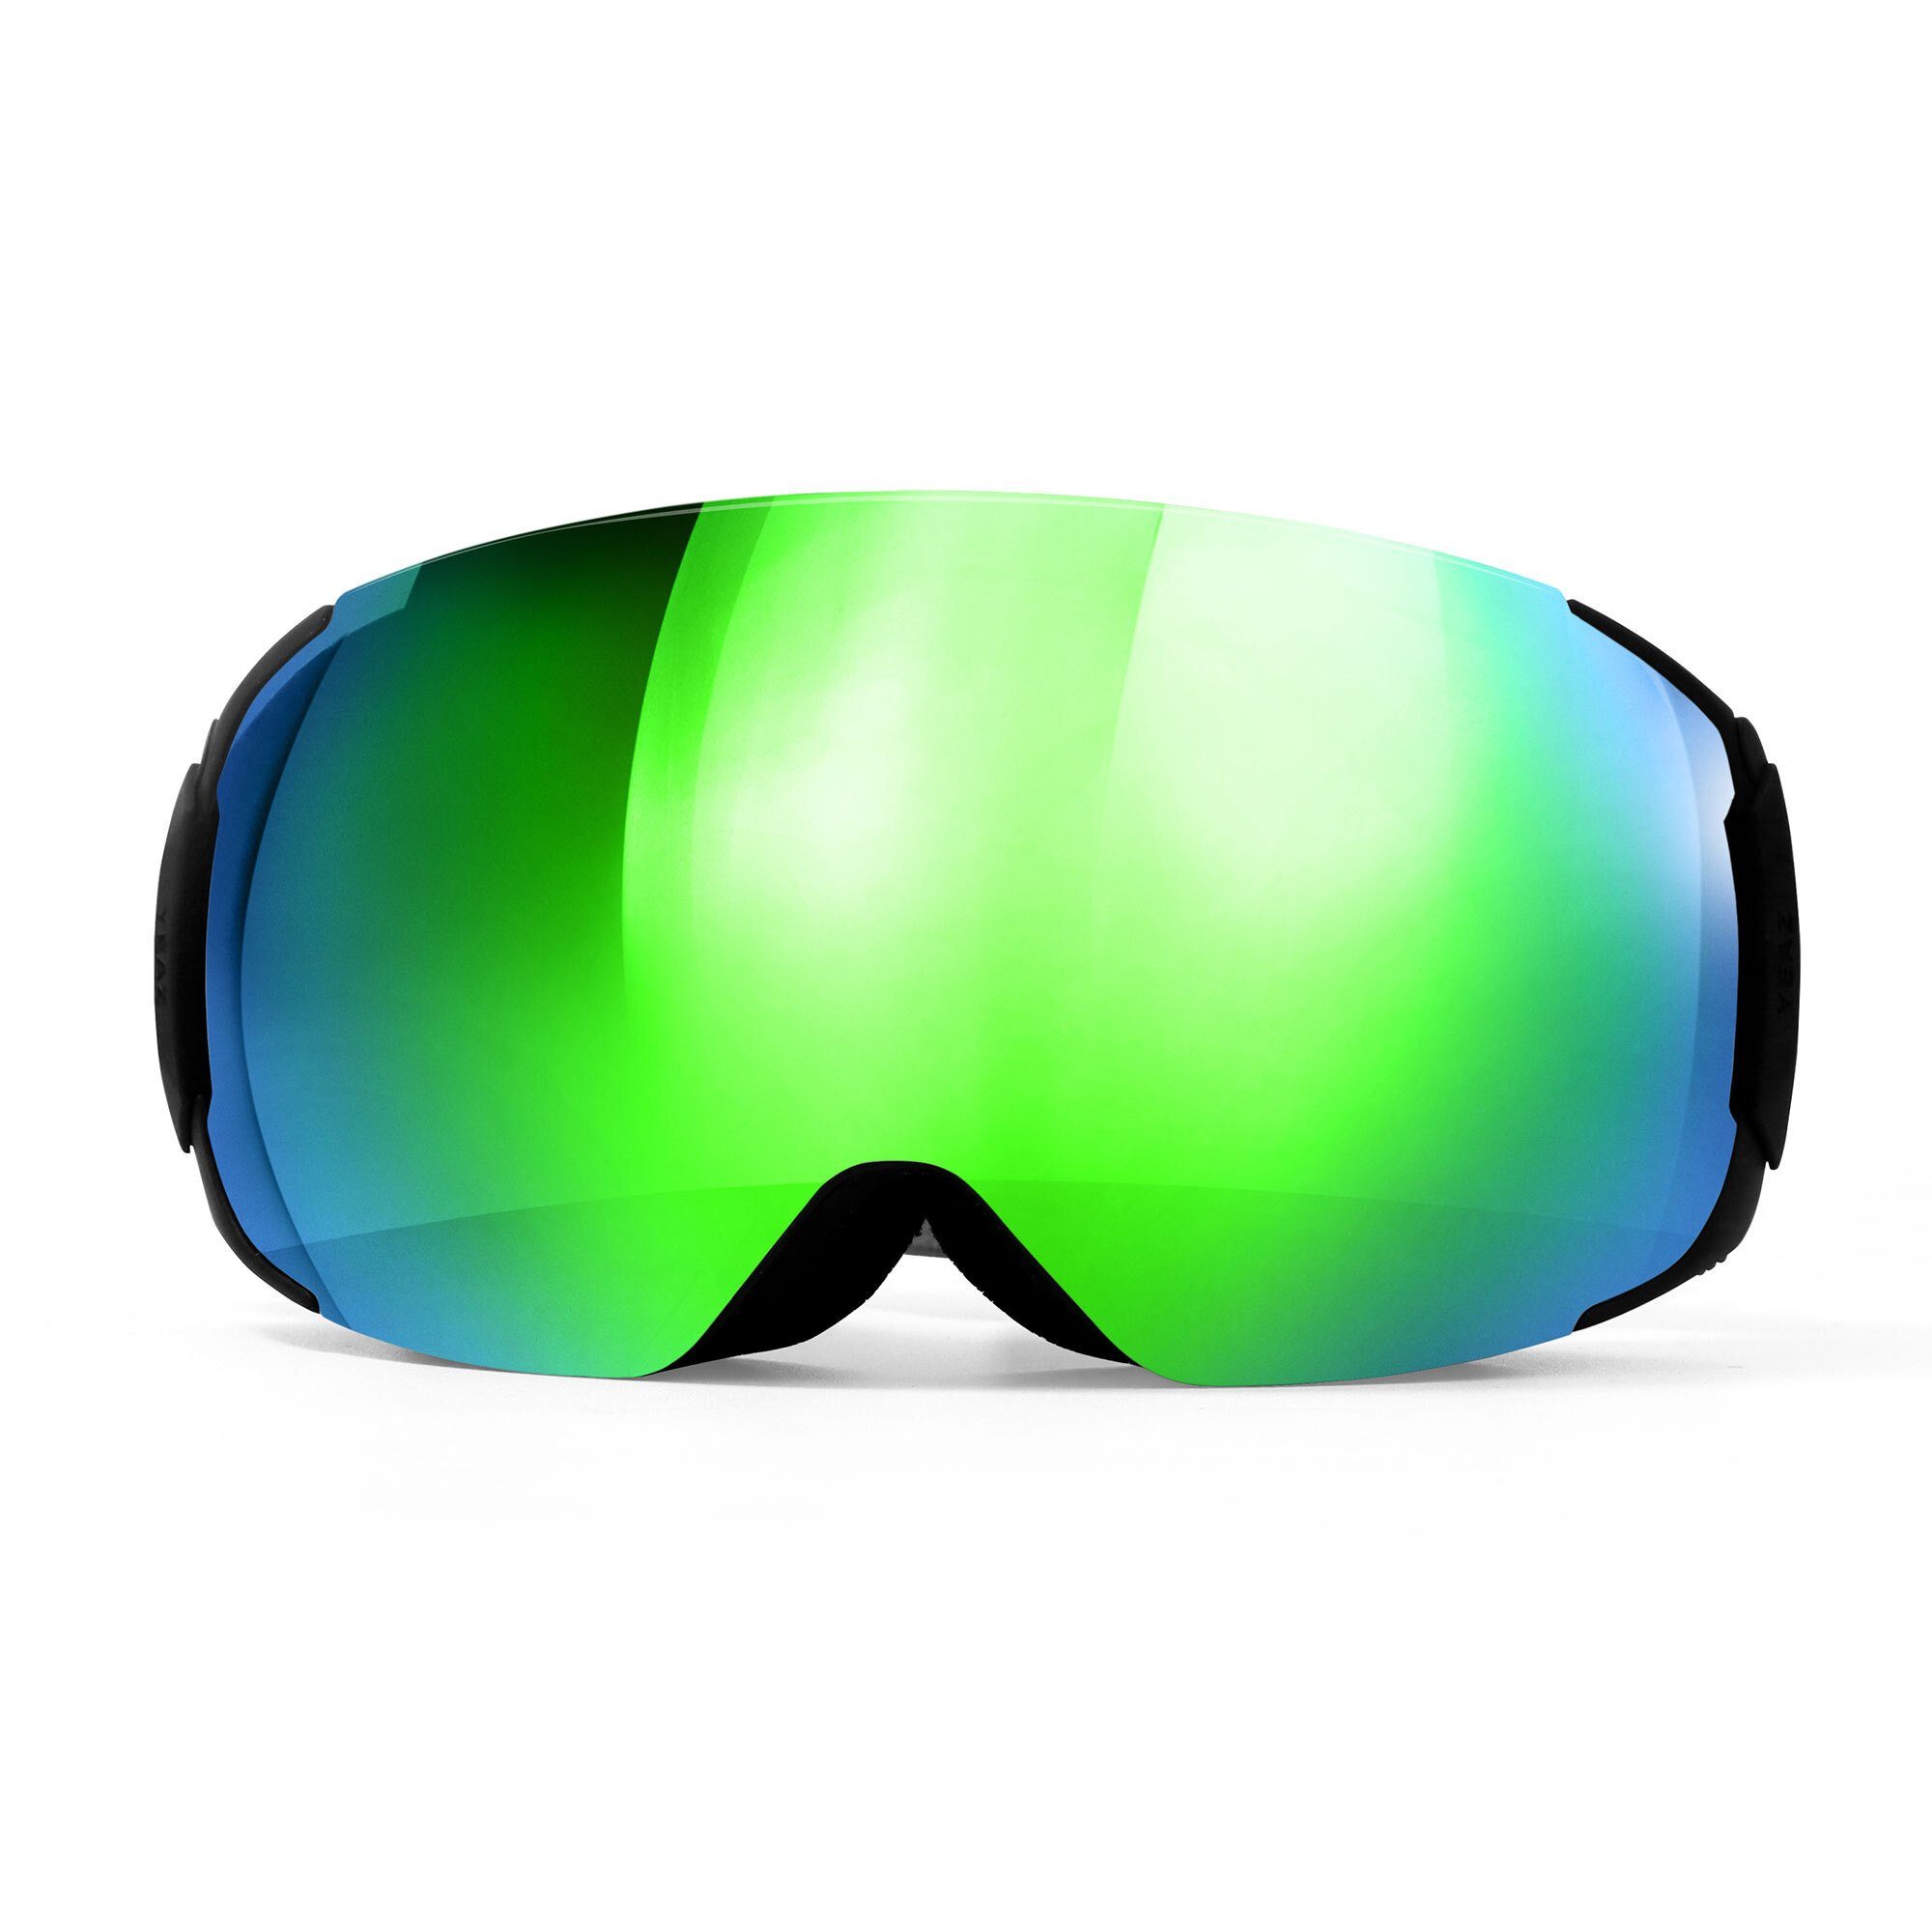 für und Premium-Ski- YEAZ TWEAK-X Jugendliche Snowboardbrille ski- snowboard-brille, Erwachsene und Skibrille und